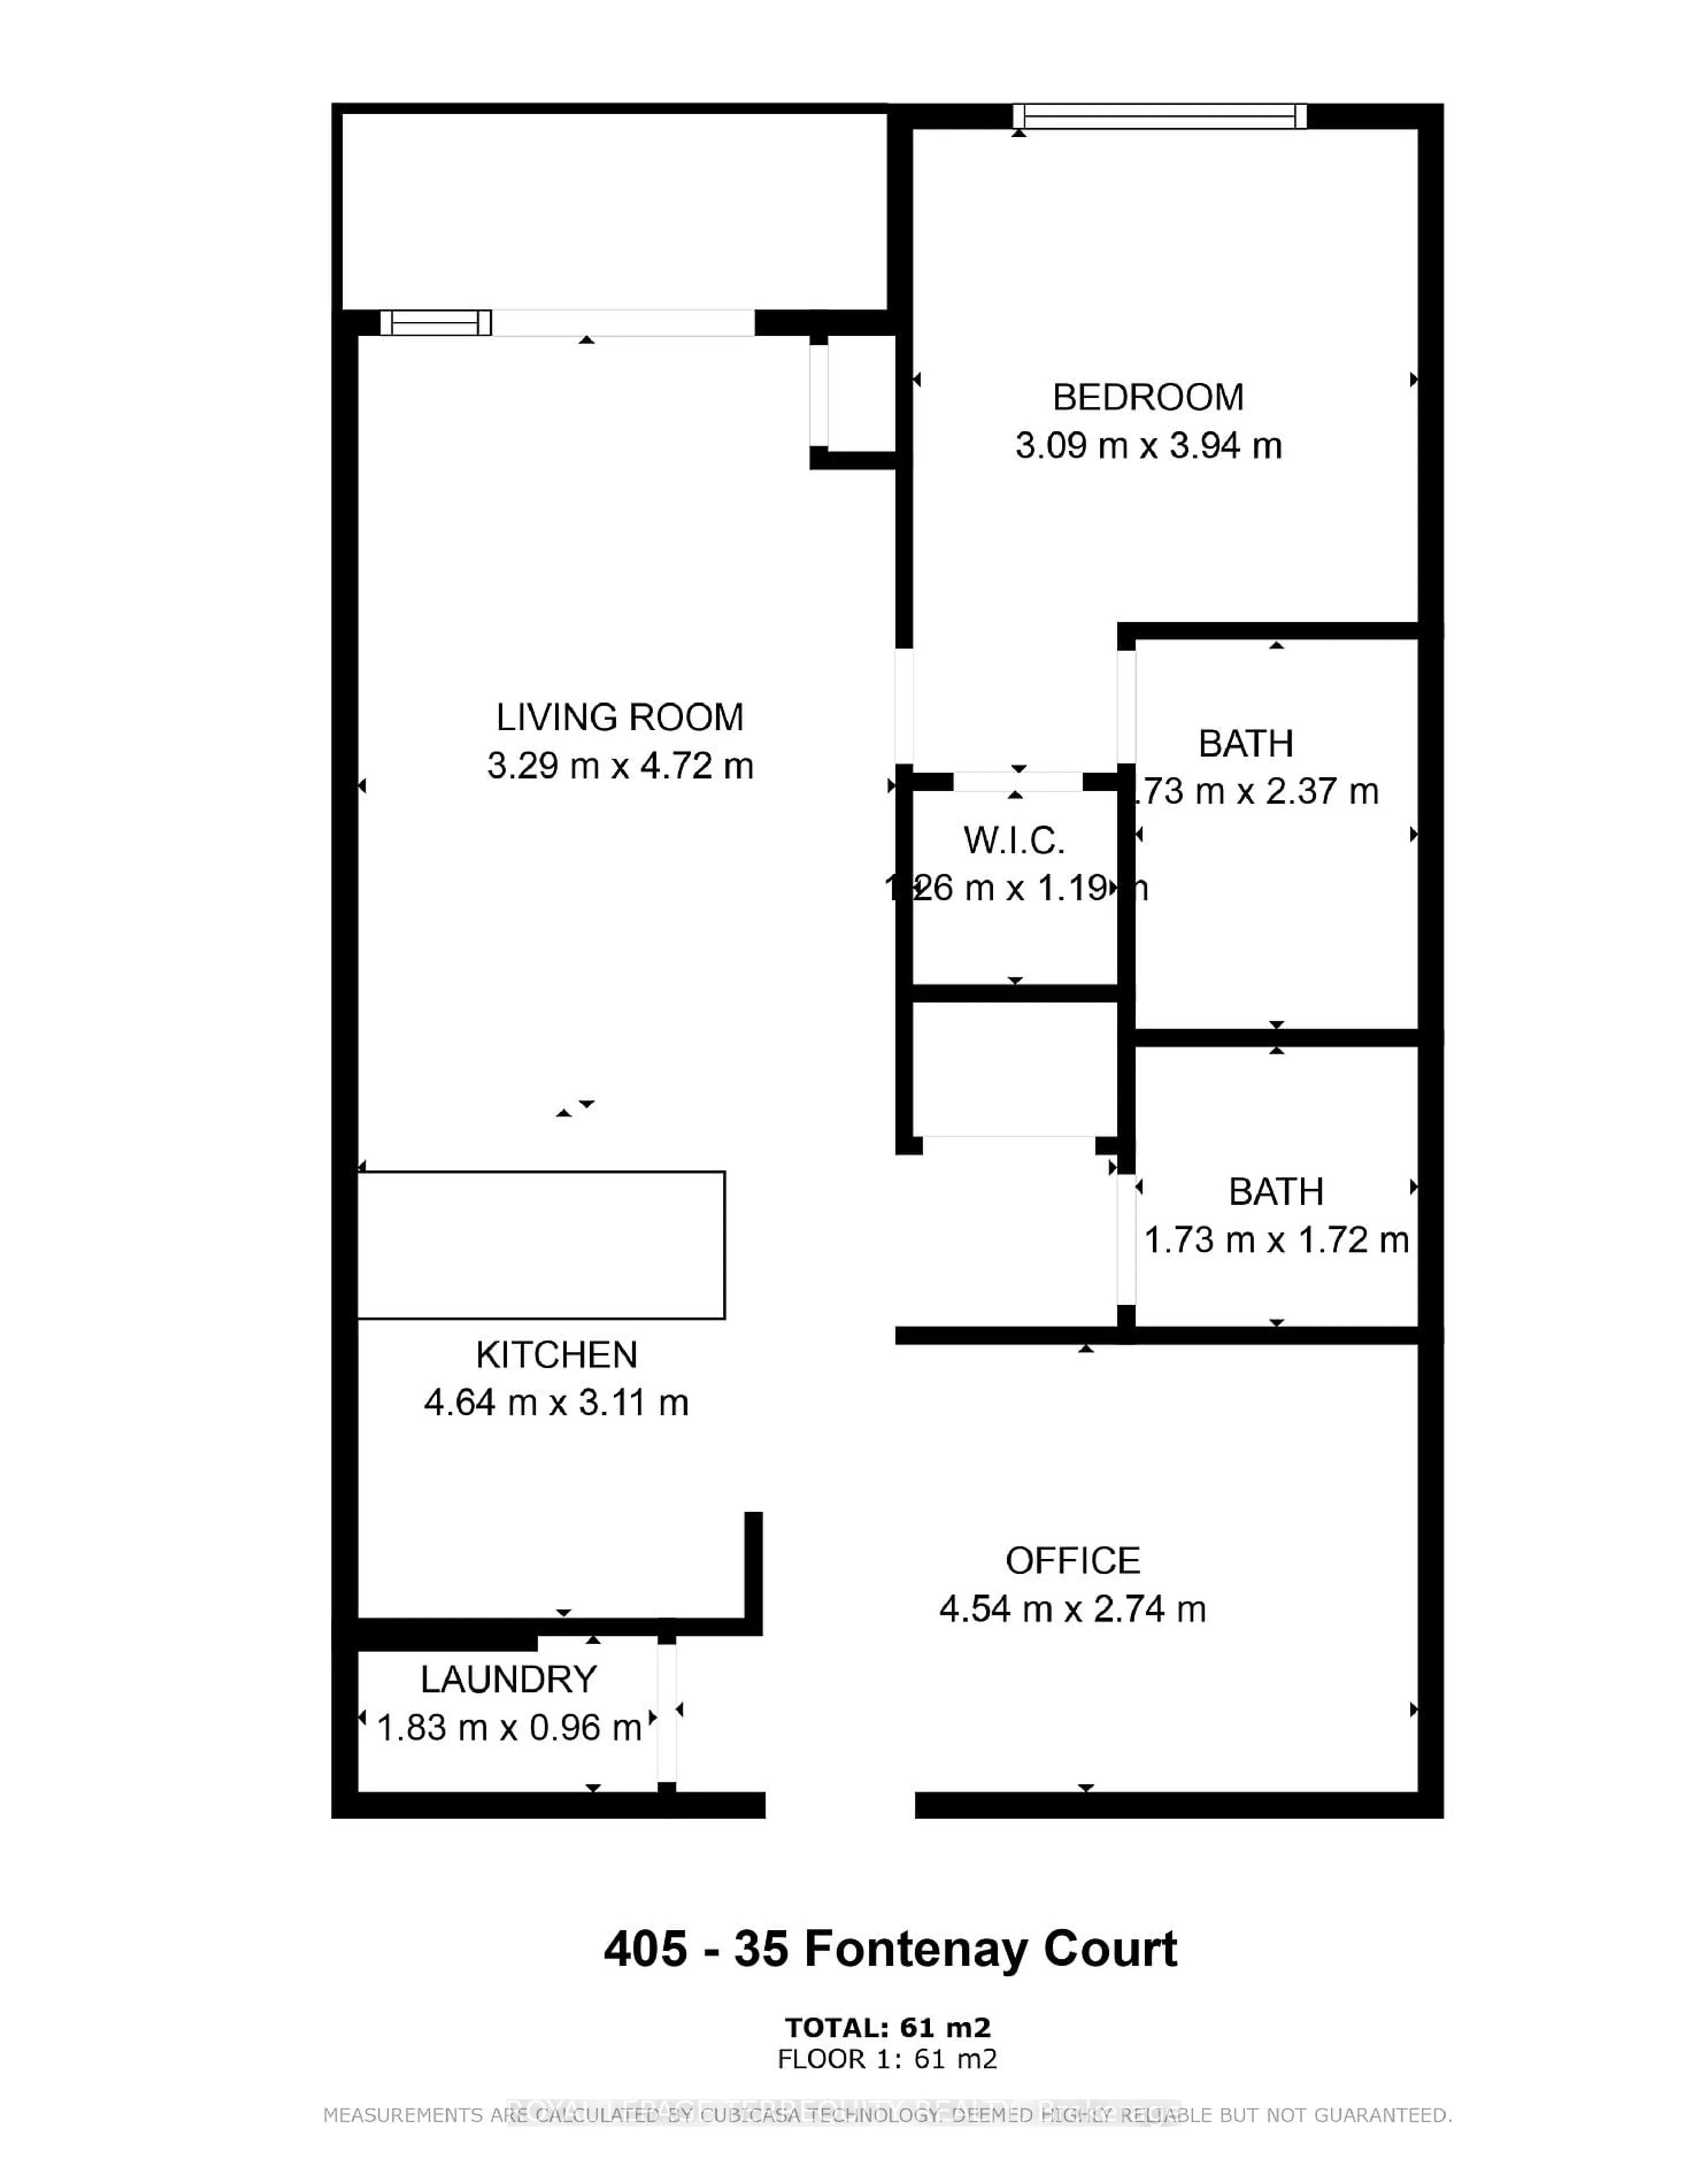 Floor plan for 35 Fontenay Crt #405, Toronto Ontario M9A 0E2